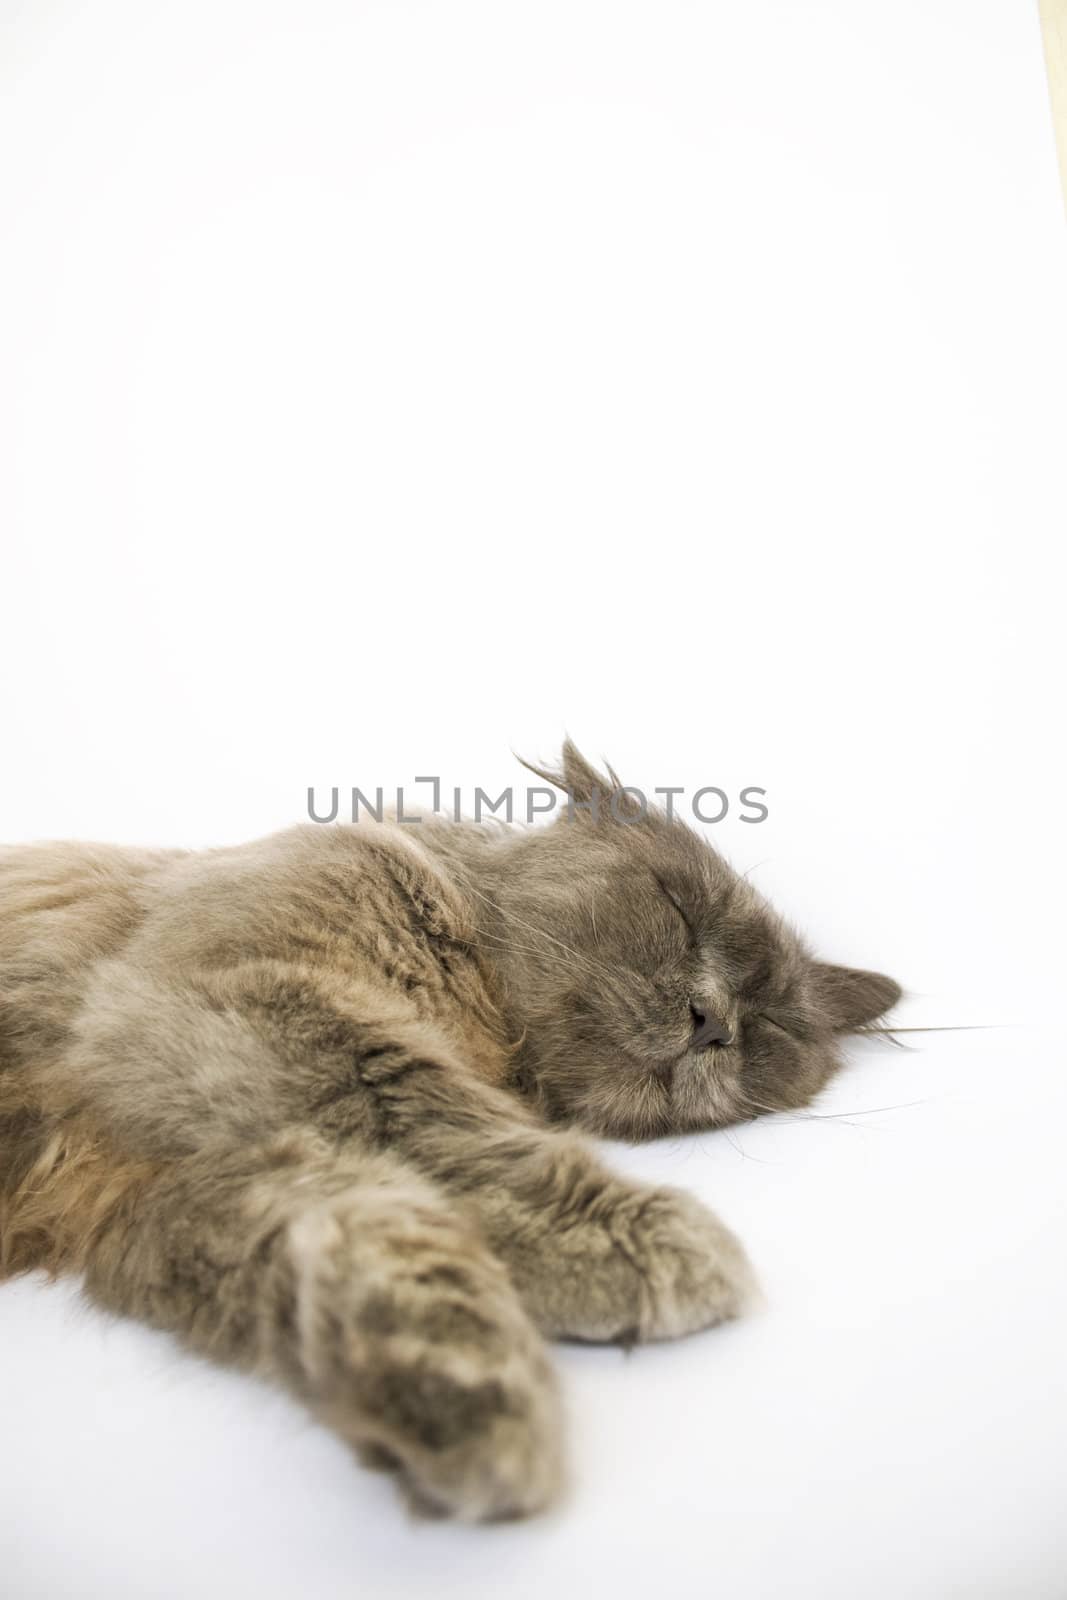 Sleeping cat on white background